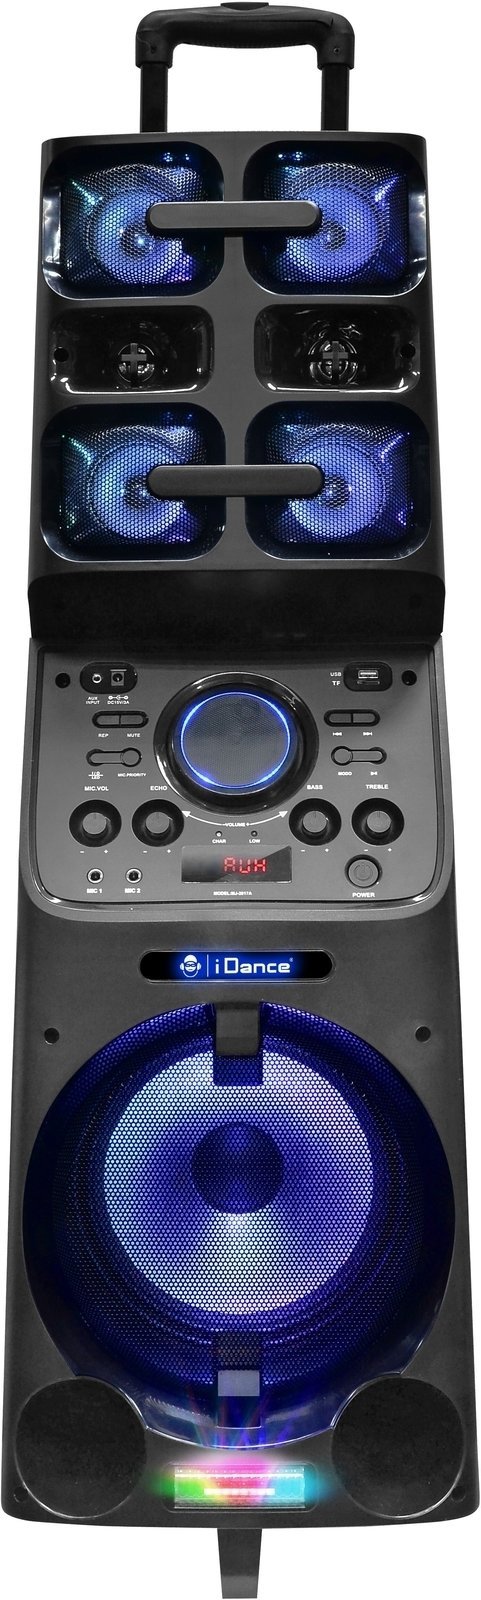 Karaoke system iDance Megabox MB-8000